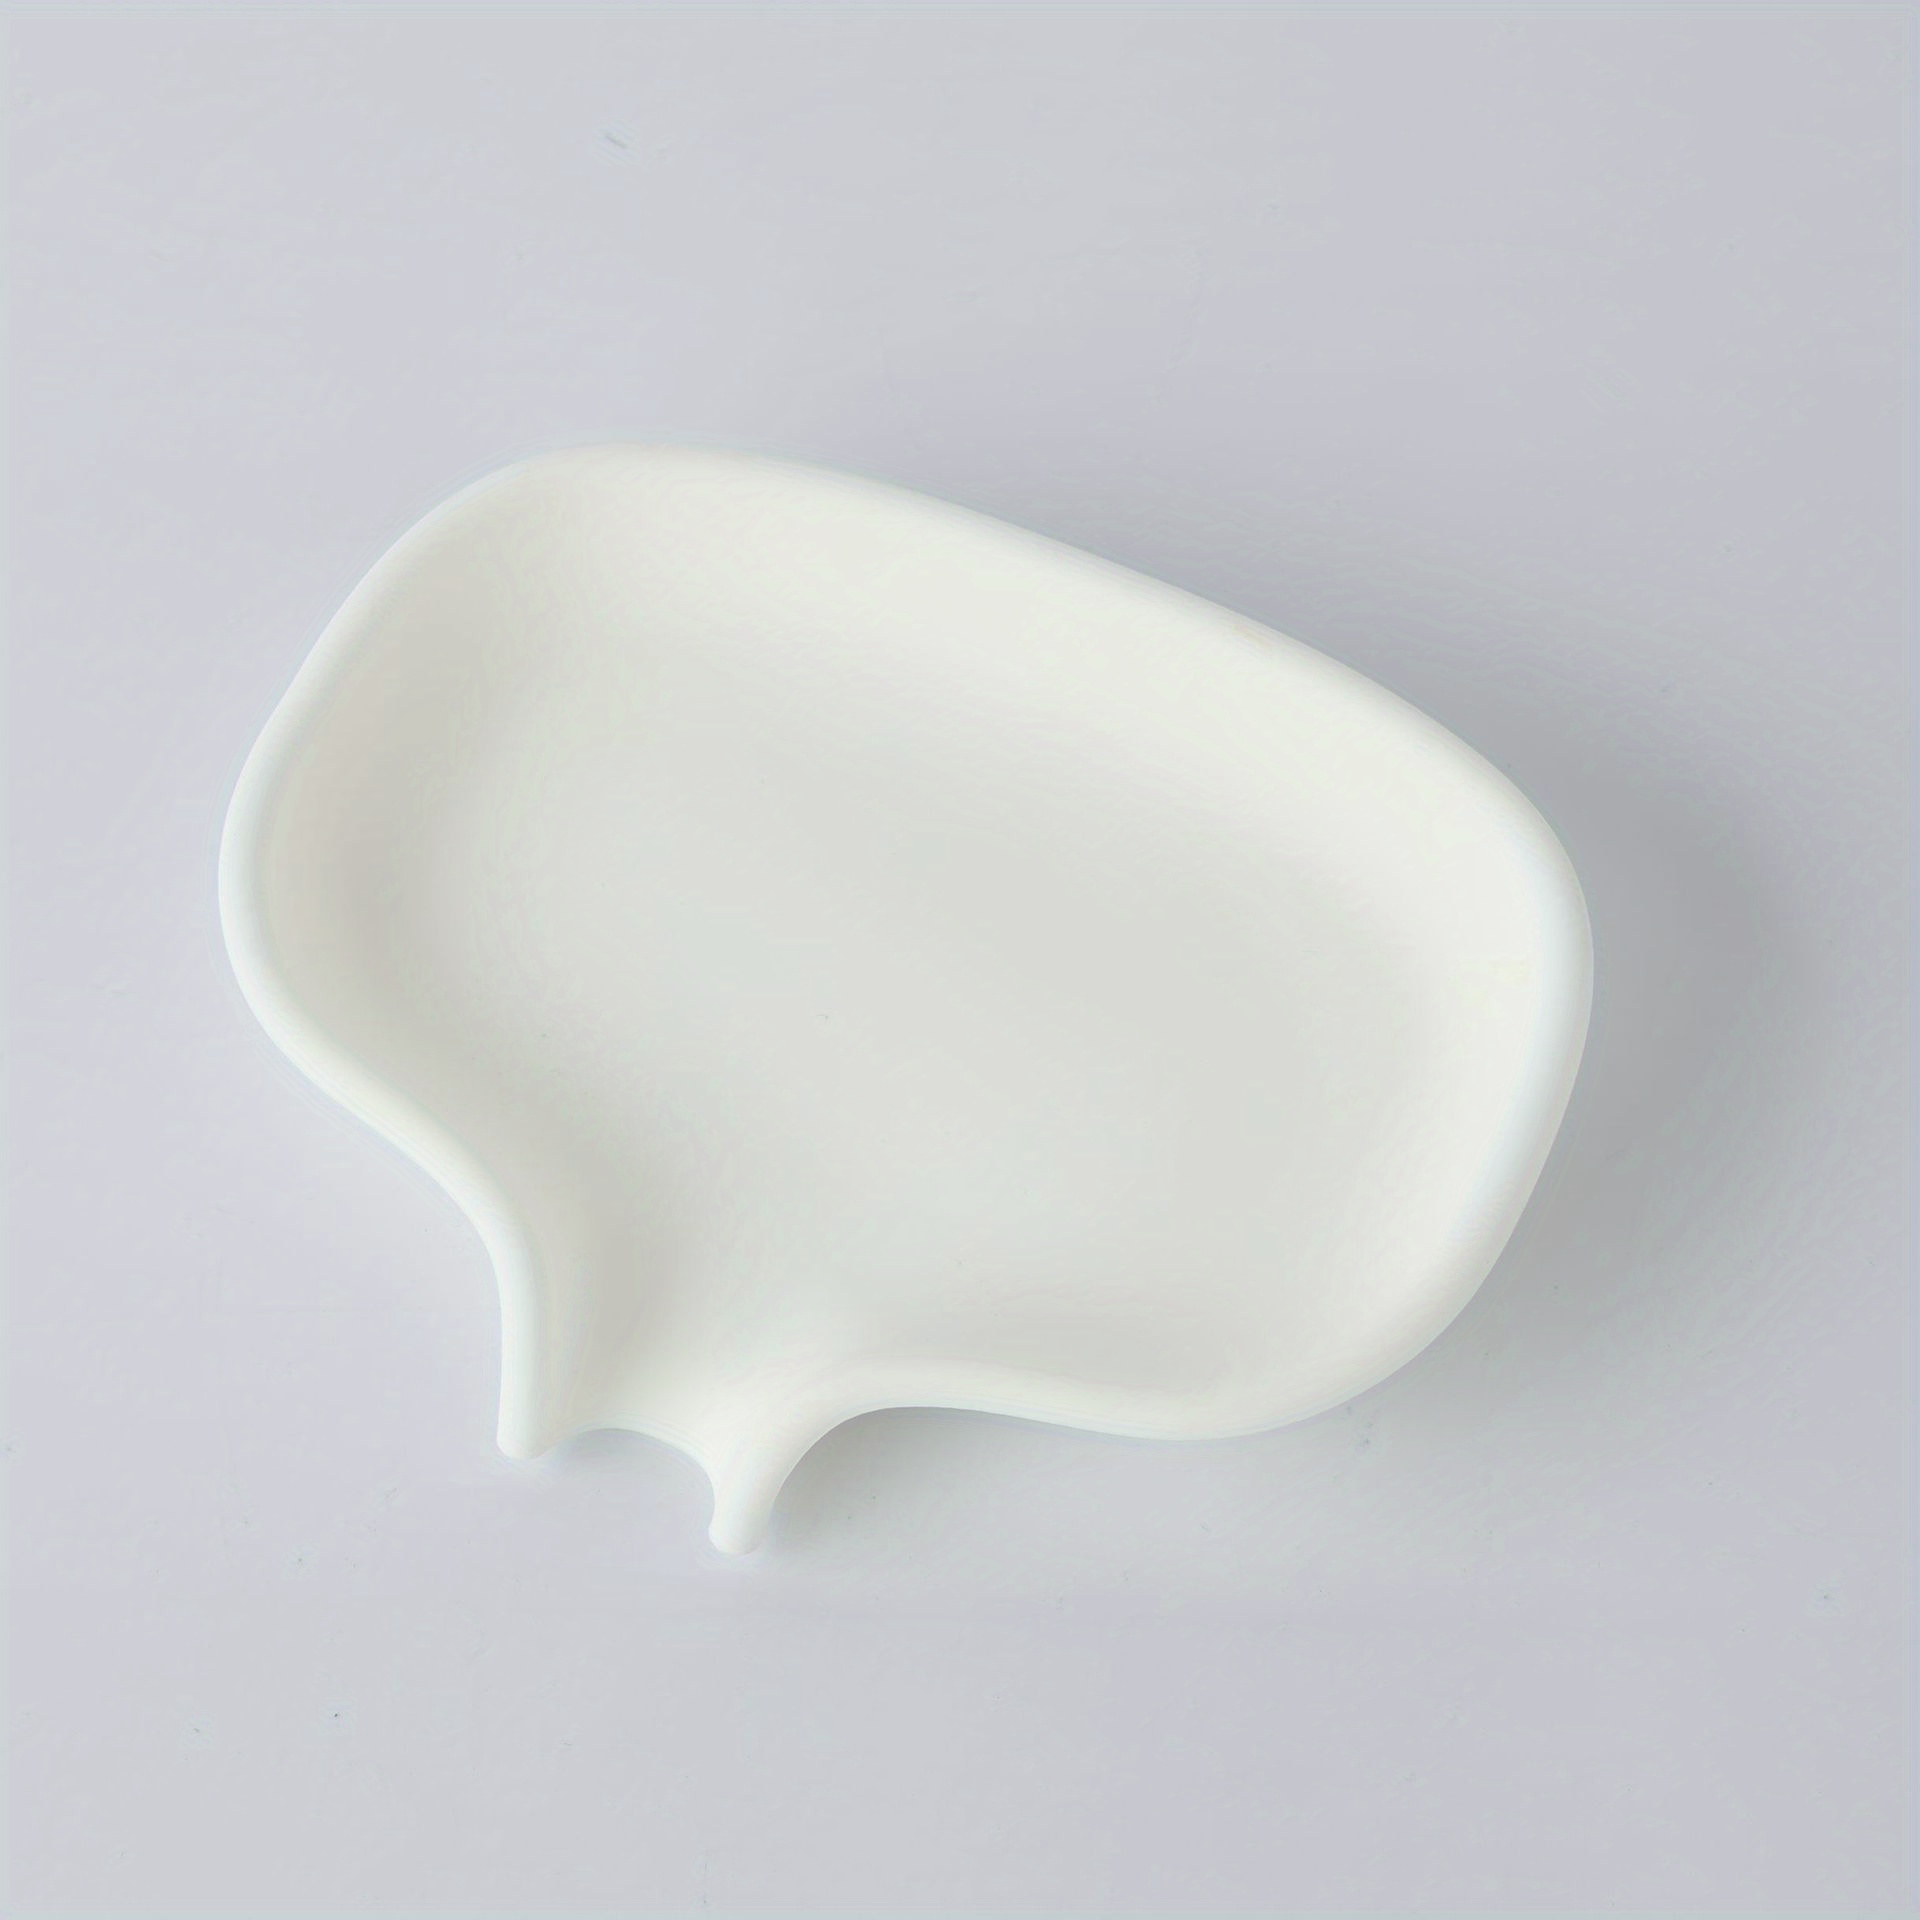 White Silicone Soap Dish